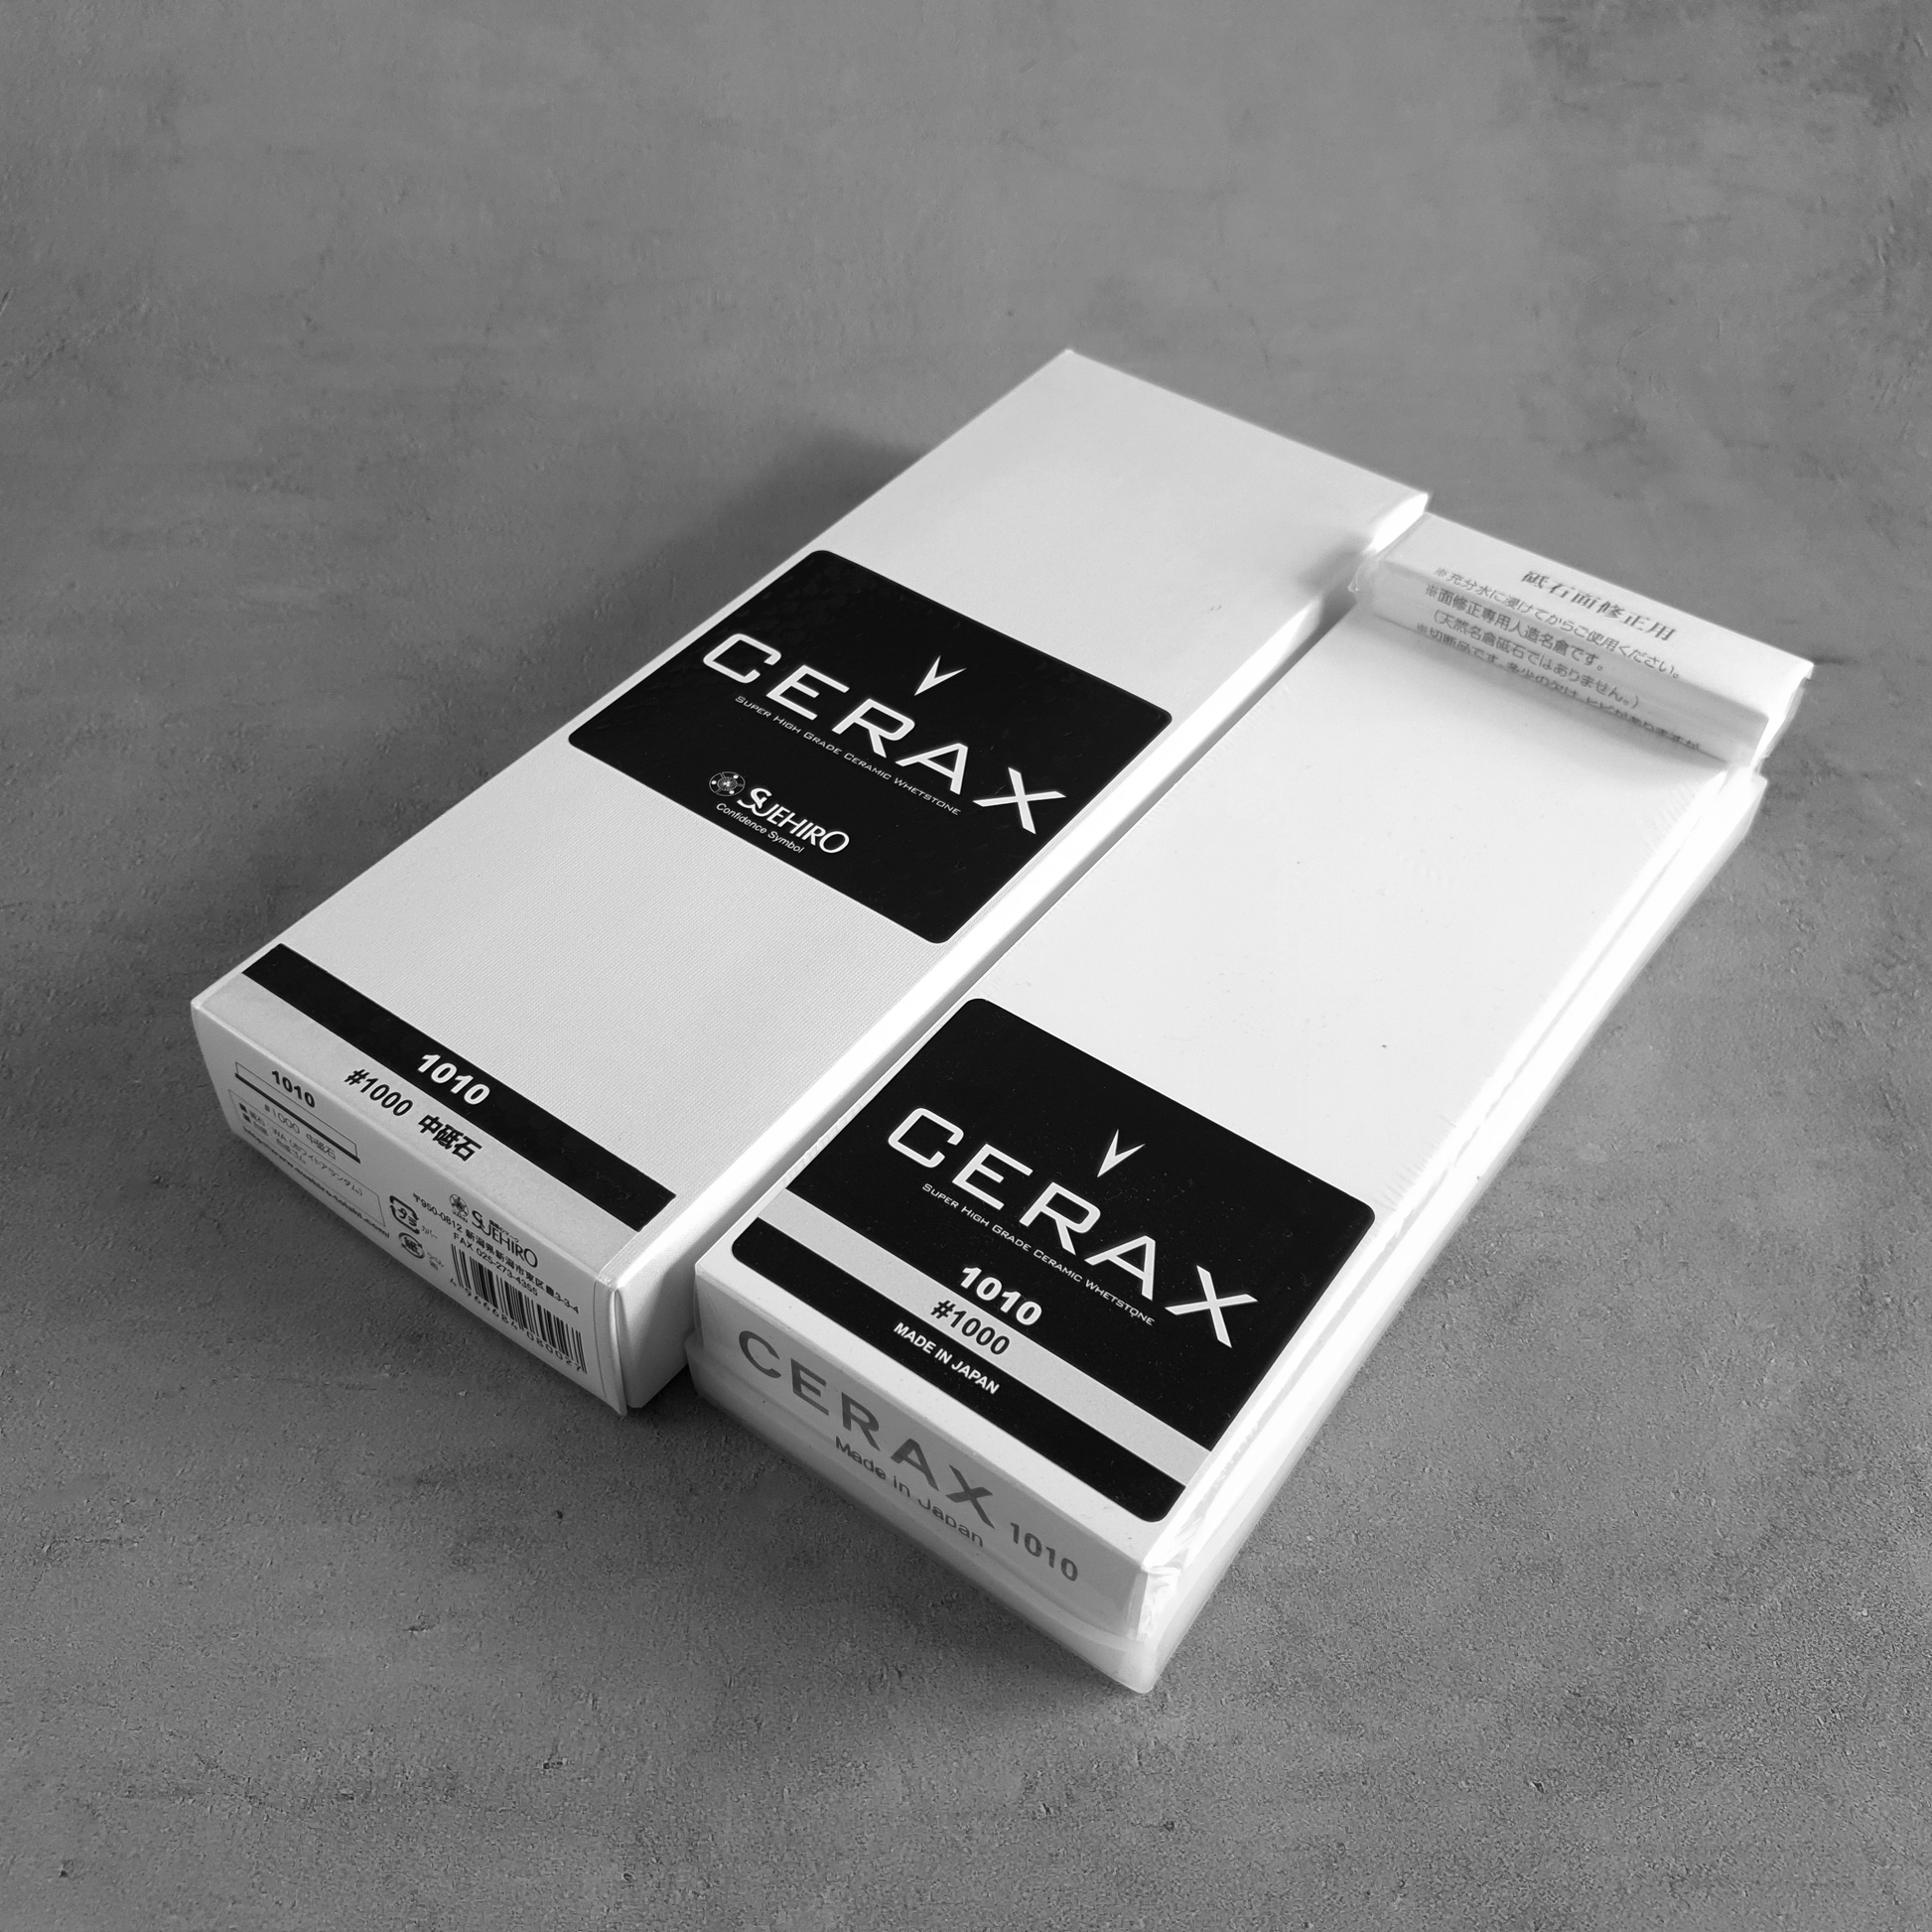 Cerax 1010 1000 Grit Ceramic Sharpening Stone Whetstone by Suehiro Box Packaging Singapore